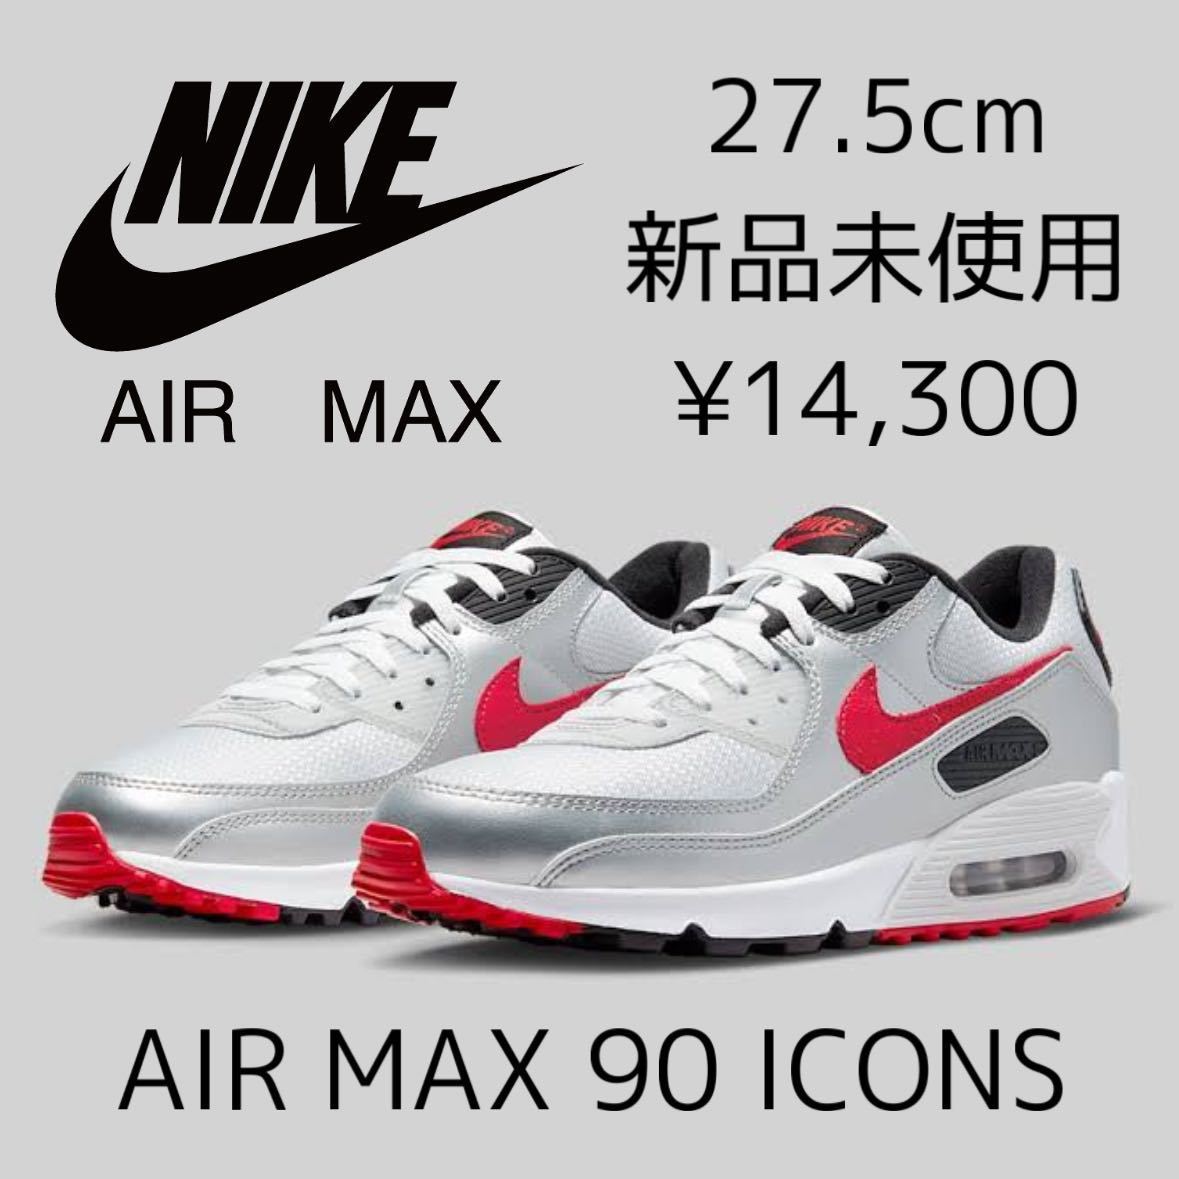 27.5cm новый товар NIKE AIR MAX 90 ICONS air max Icon air max мужской спортивные туфли low стандартный повседневная обувь серебряный красный 